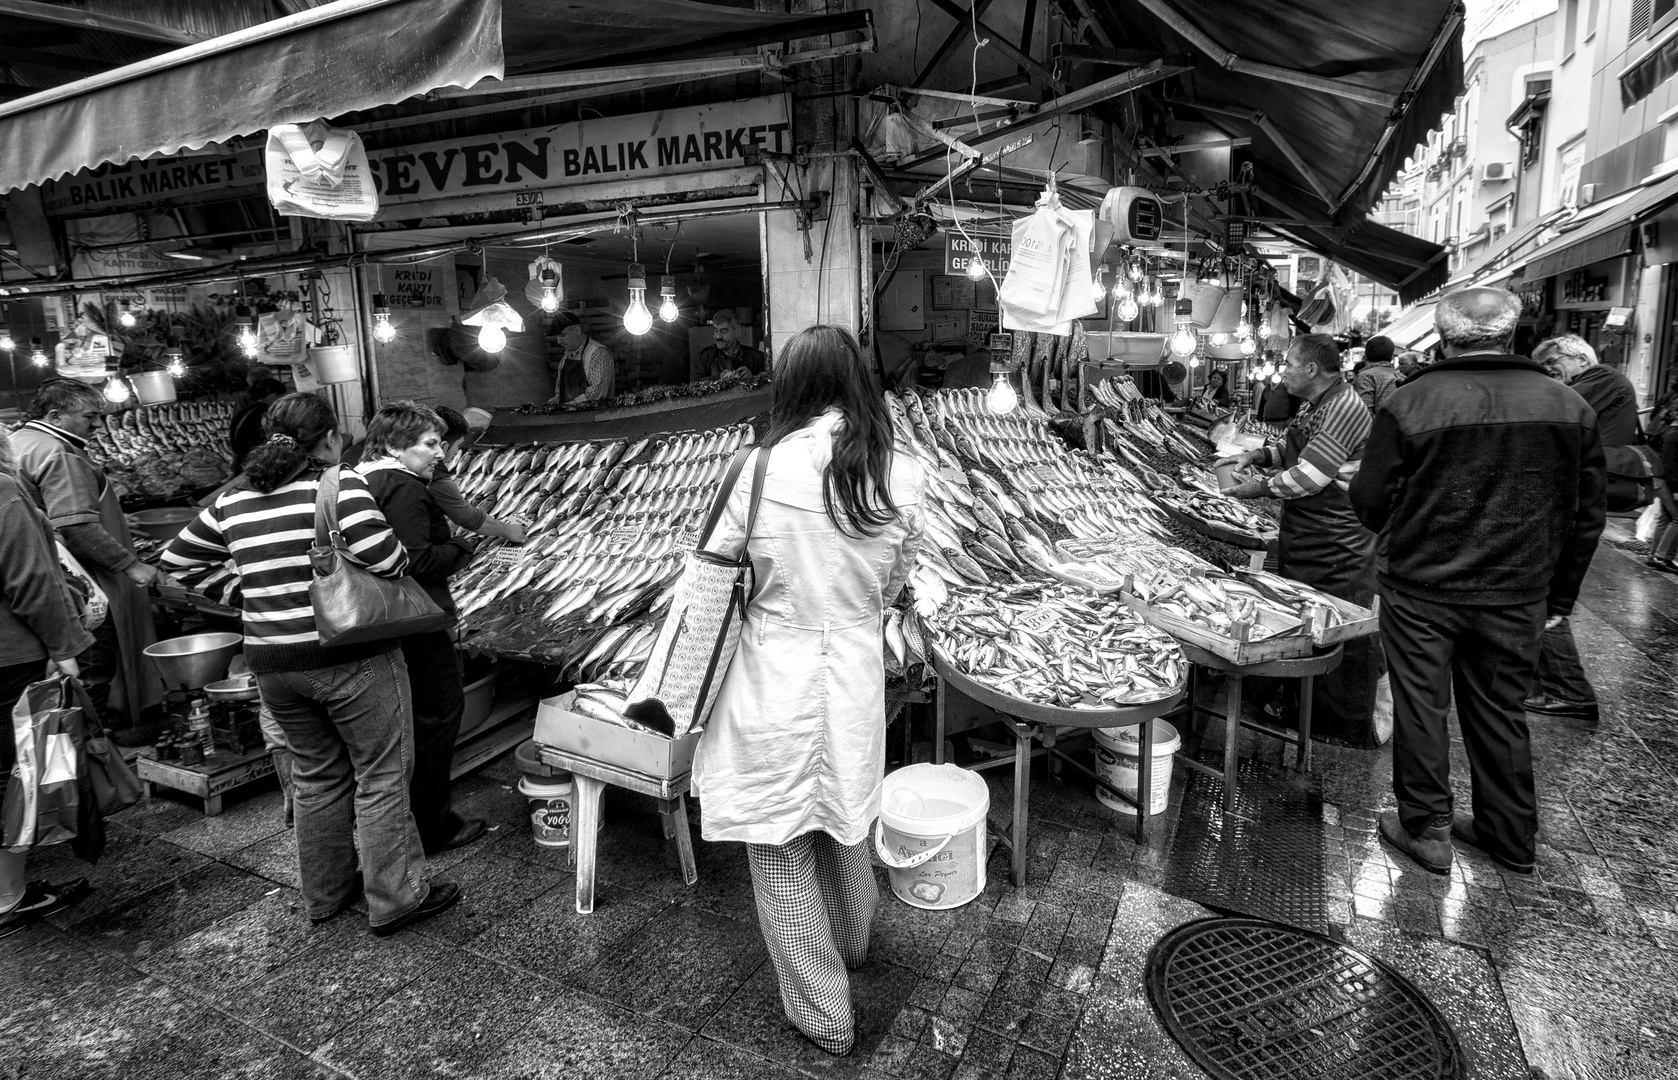 Seven Balik Market ...